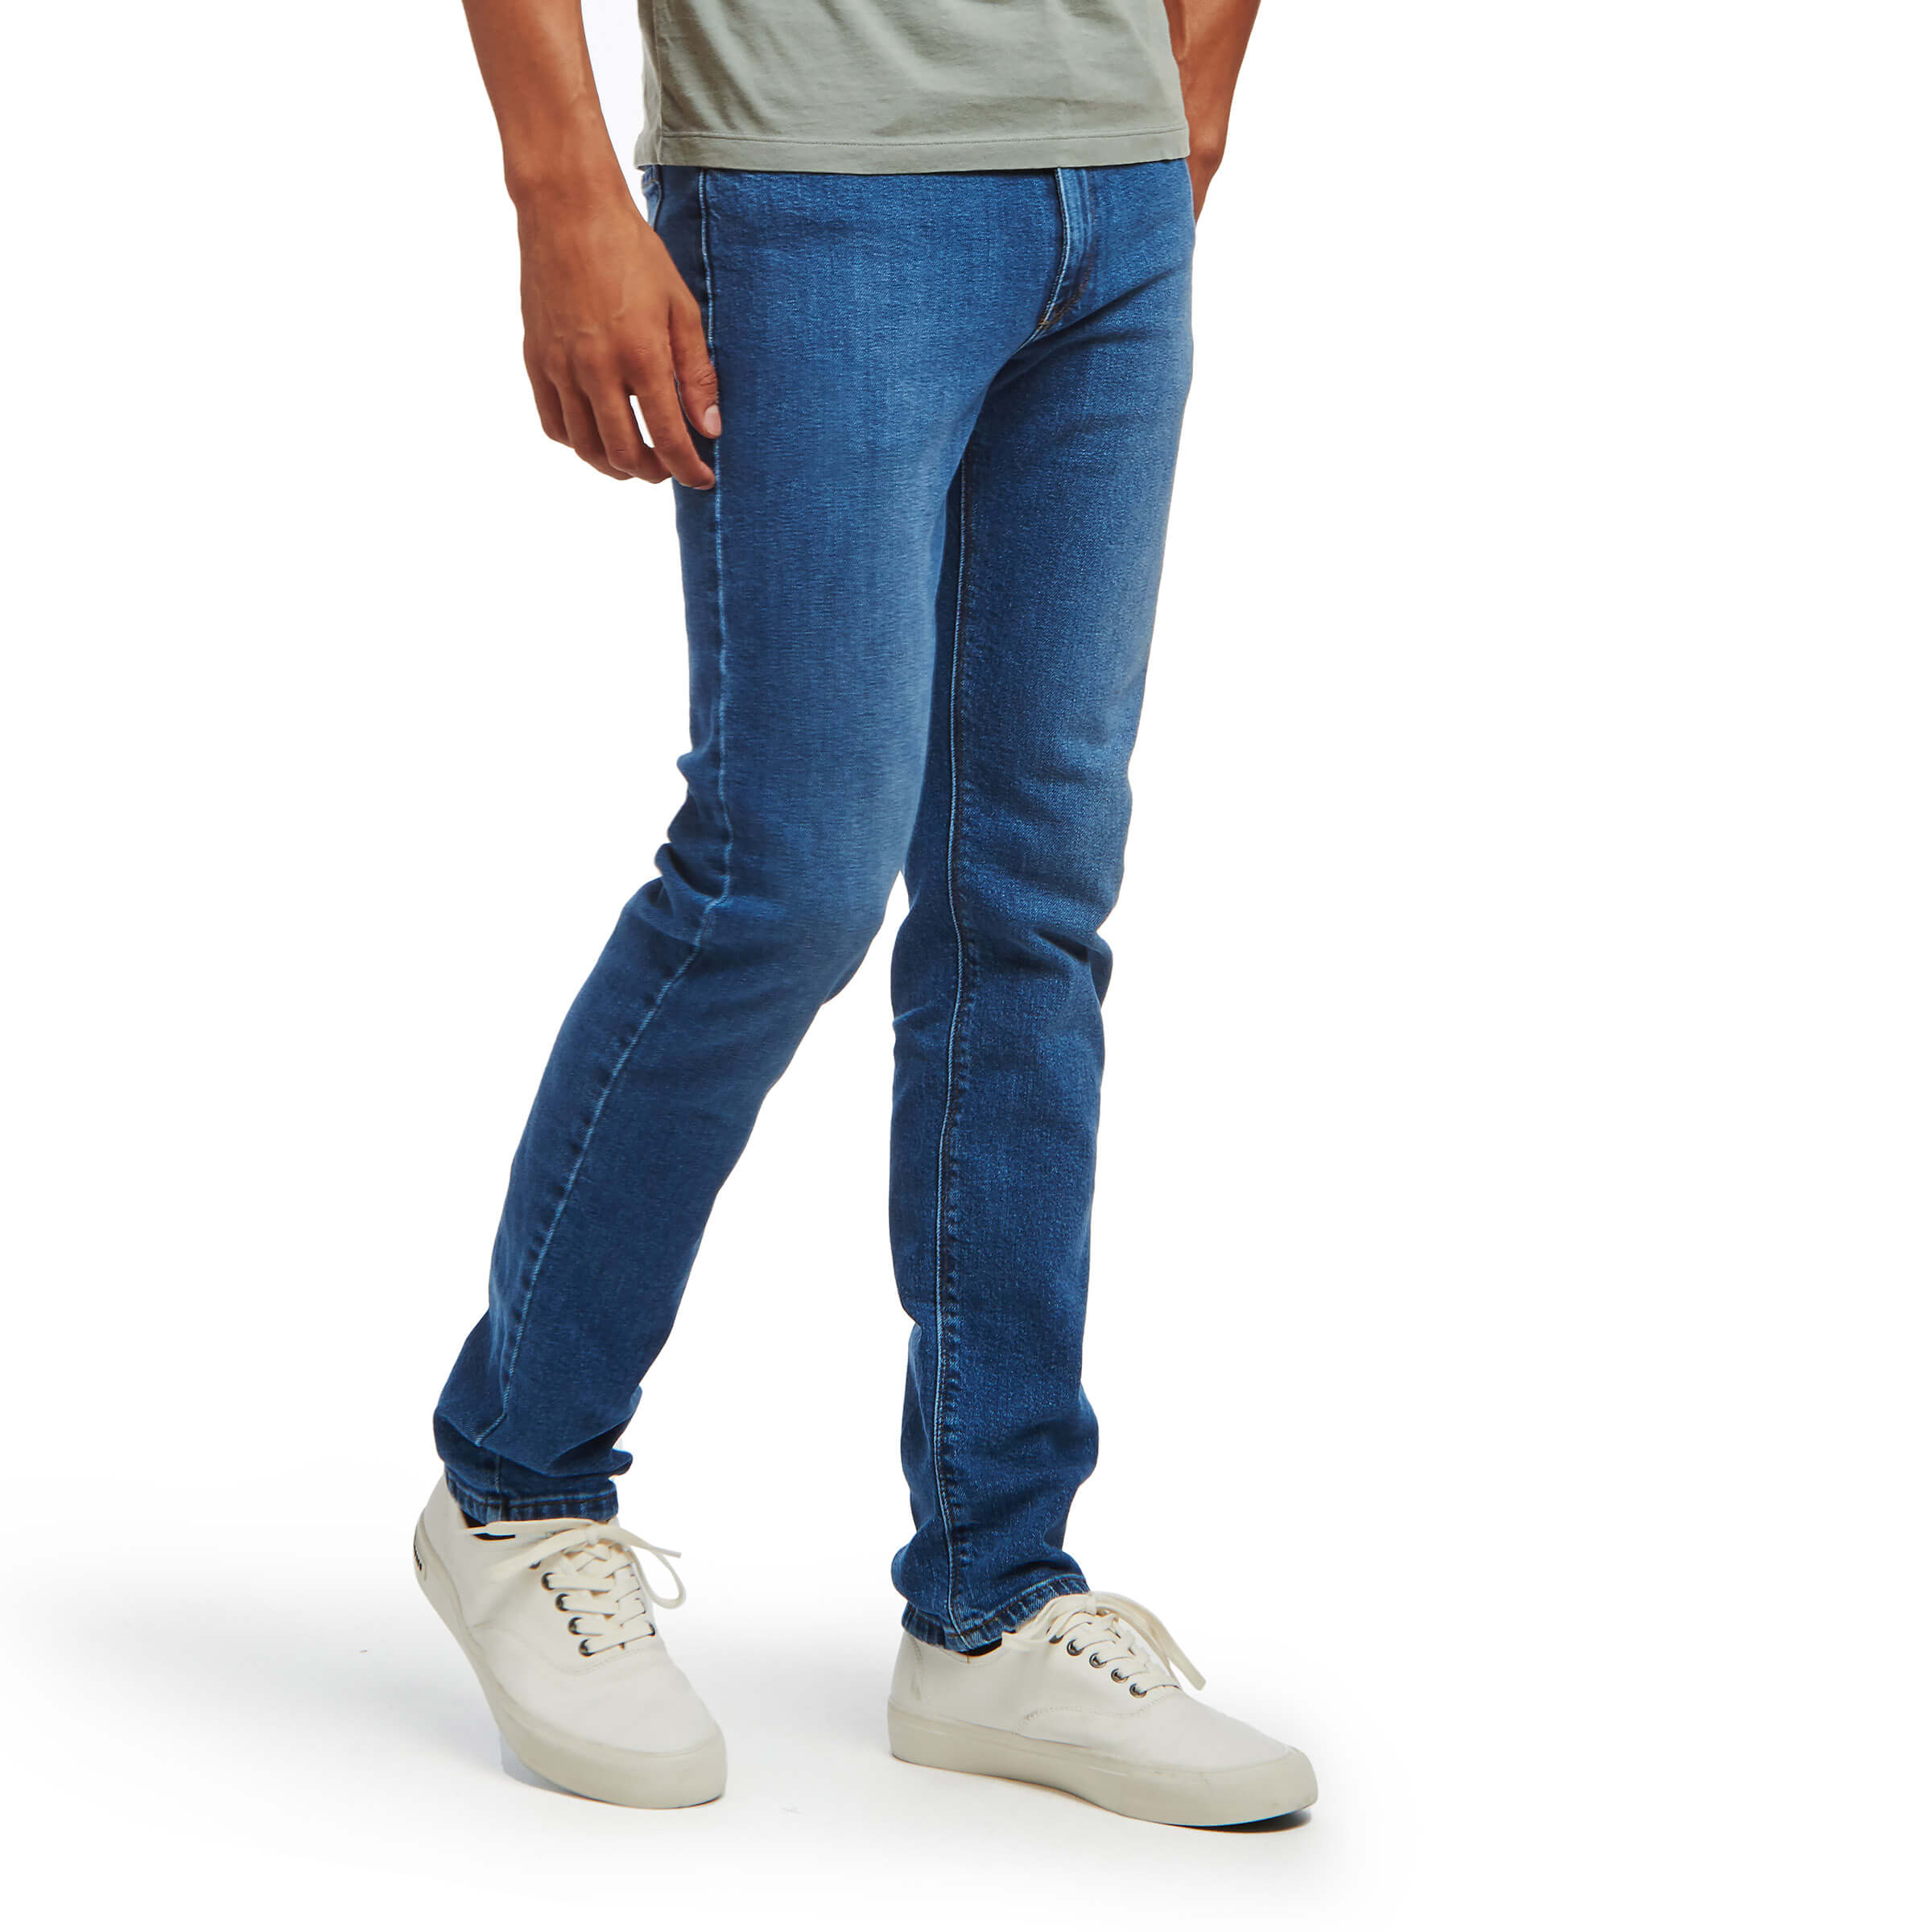 Men wearing Azul medio Slim Hubert Jeans